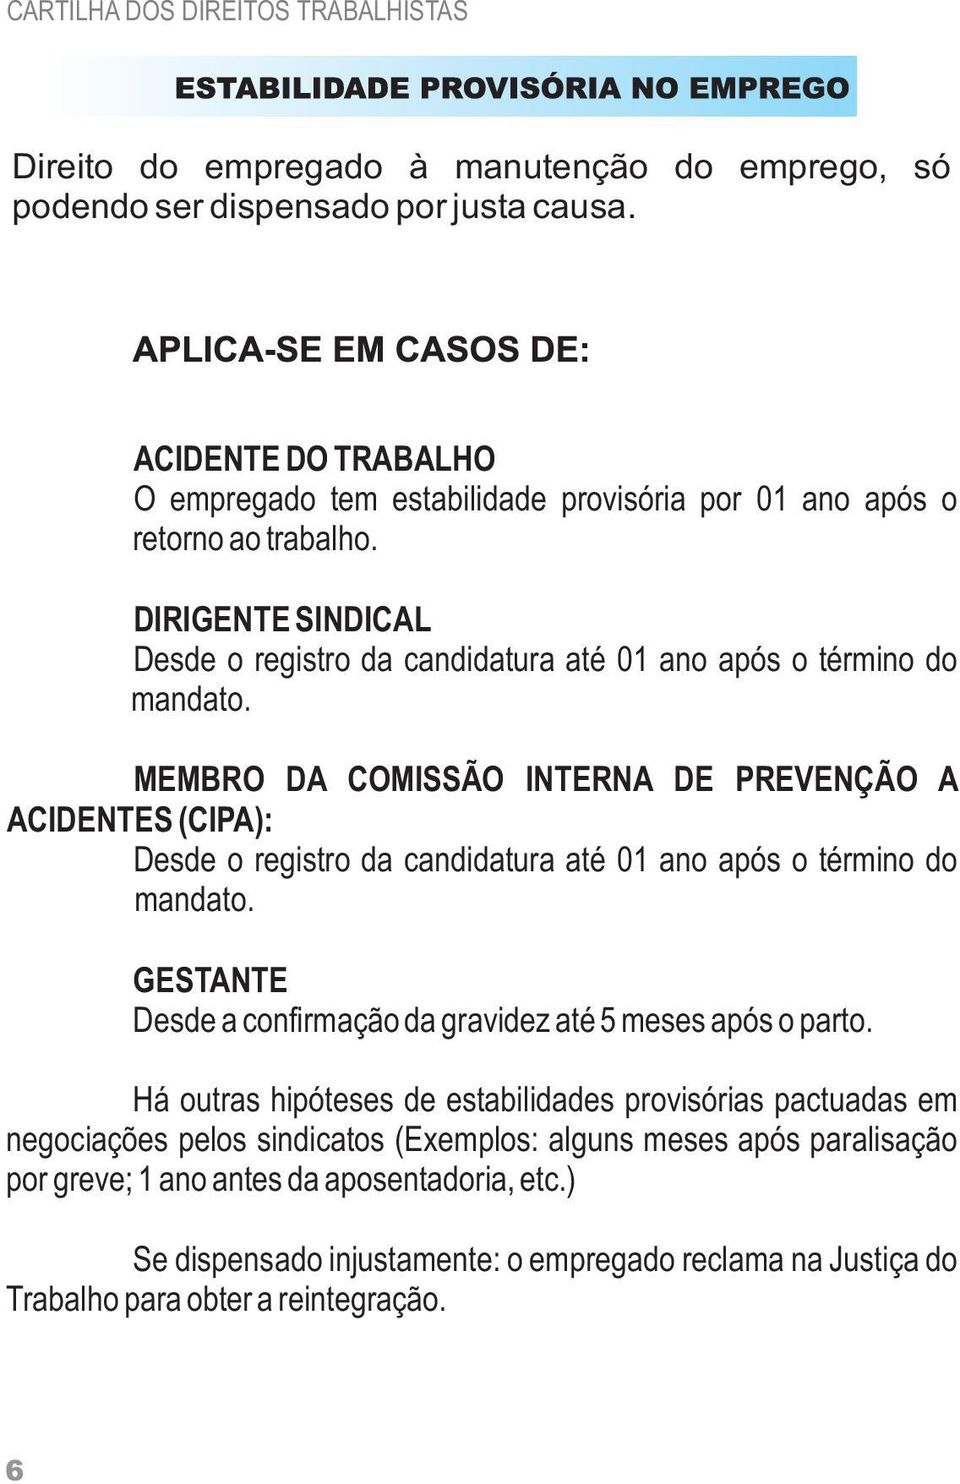 MEMBRO DA COMISSÃO INTERNA DE PREVENÇÃO A ACIDENTES (CIPA): Desde o registro da candidatura até 01 ano após o término do mandato.